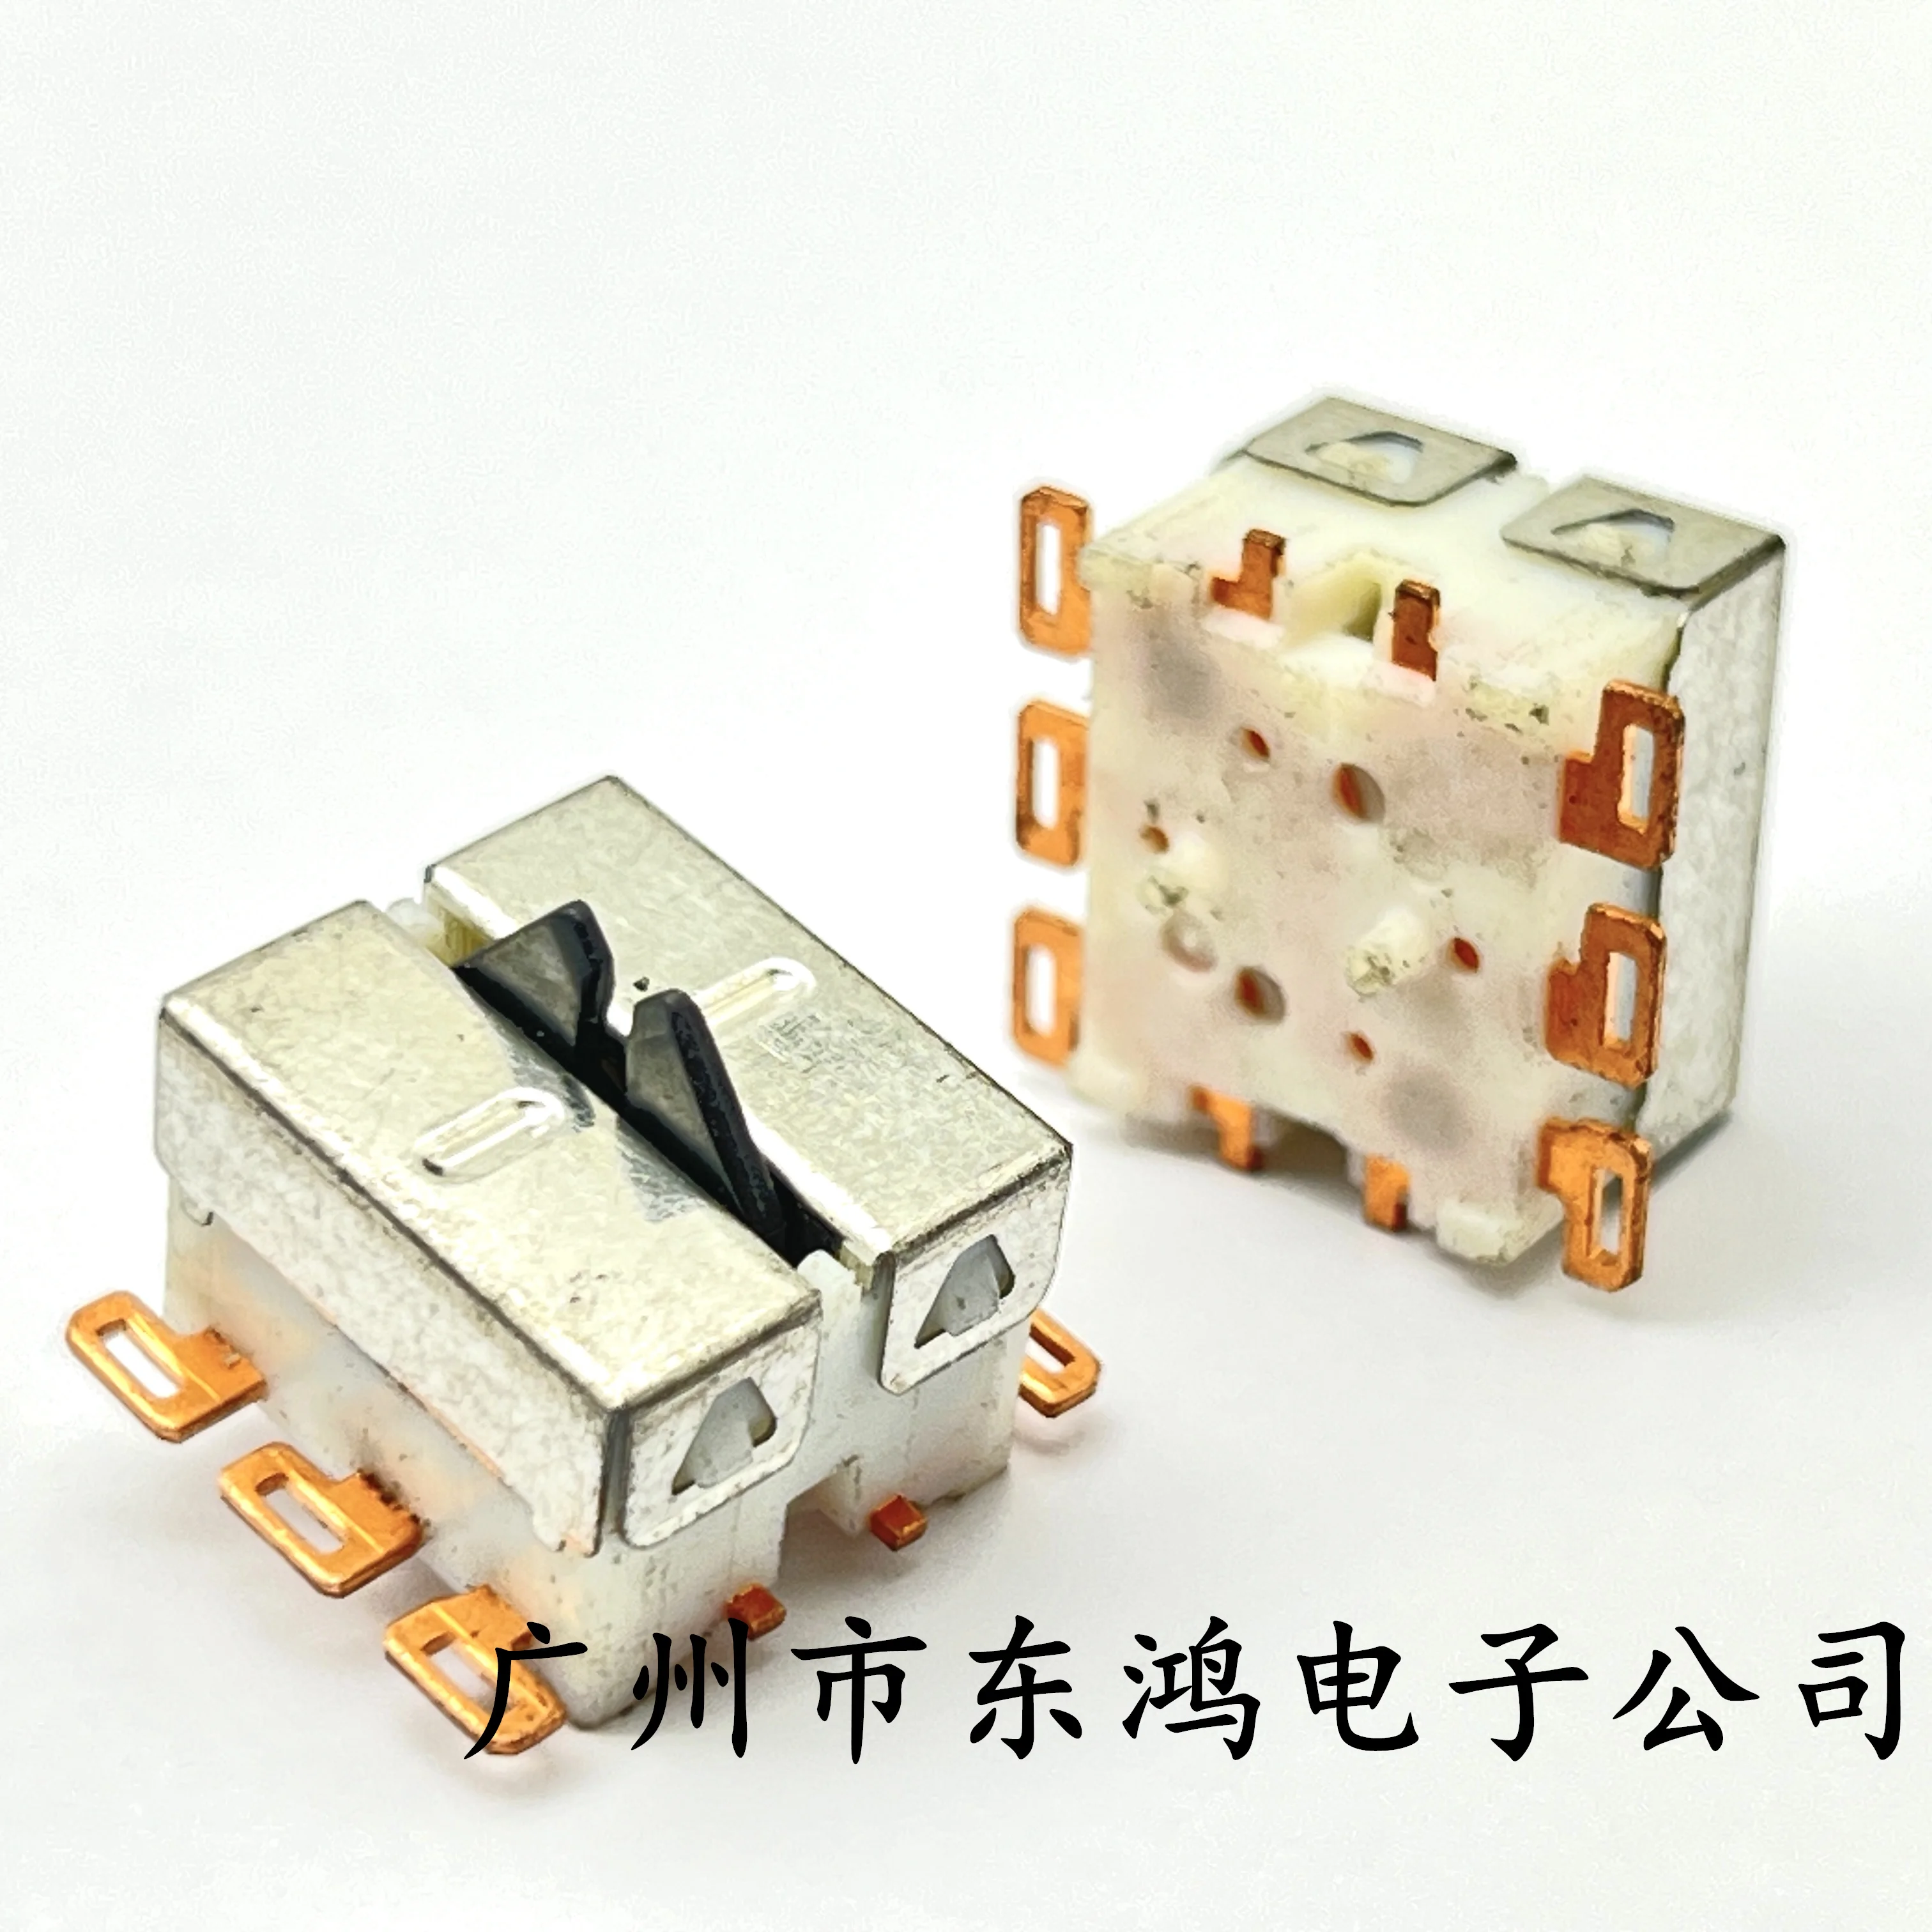 1 ШТ Японский переключатель обнаружения стеклоподъемника SANAS5847B Автомобильная кнопка двойного ограничения SMD 6-контактной проводки